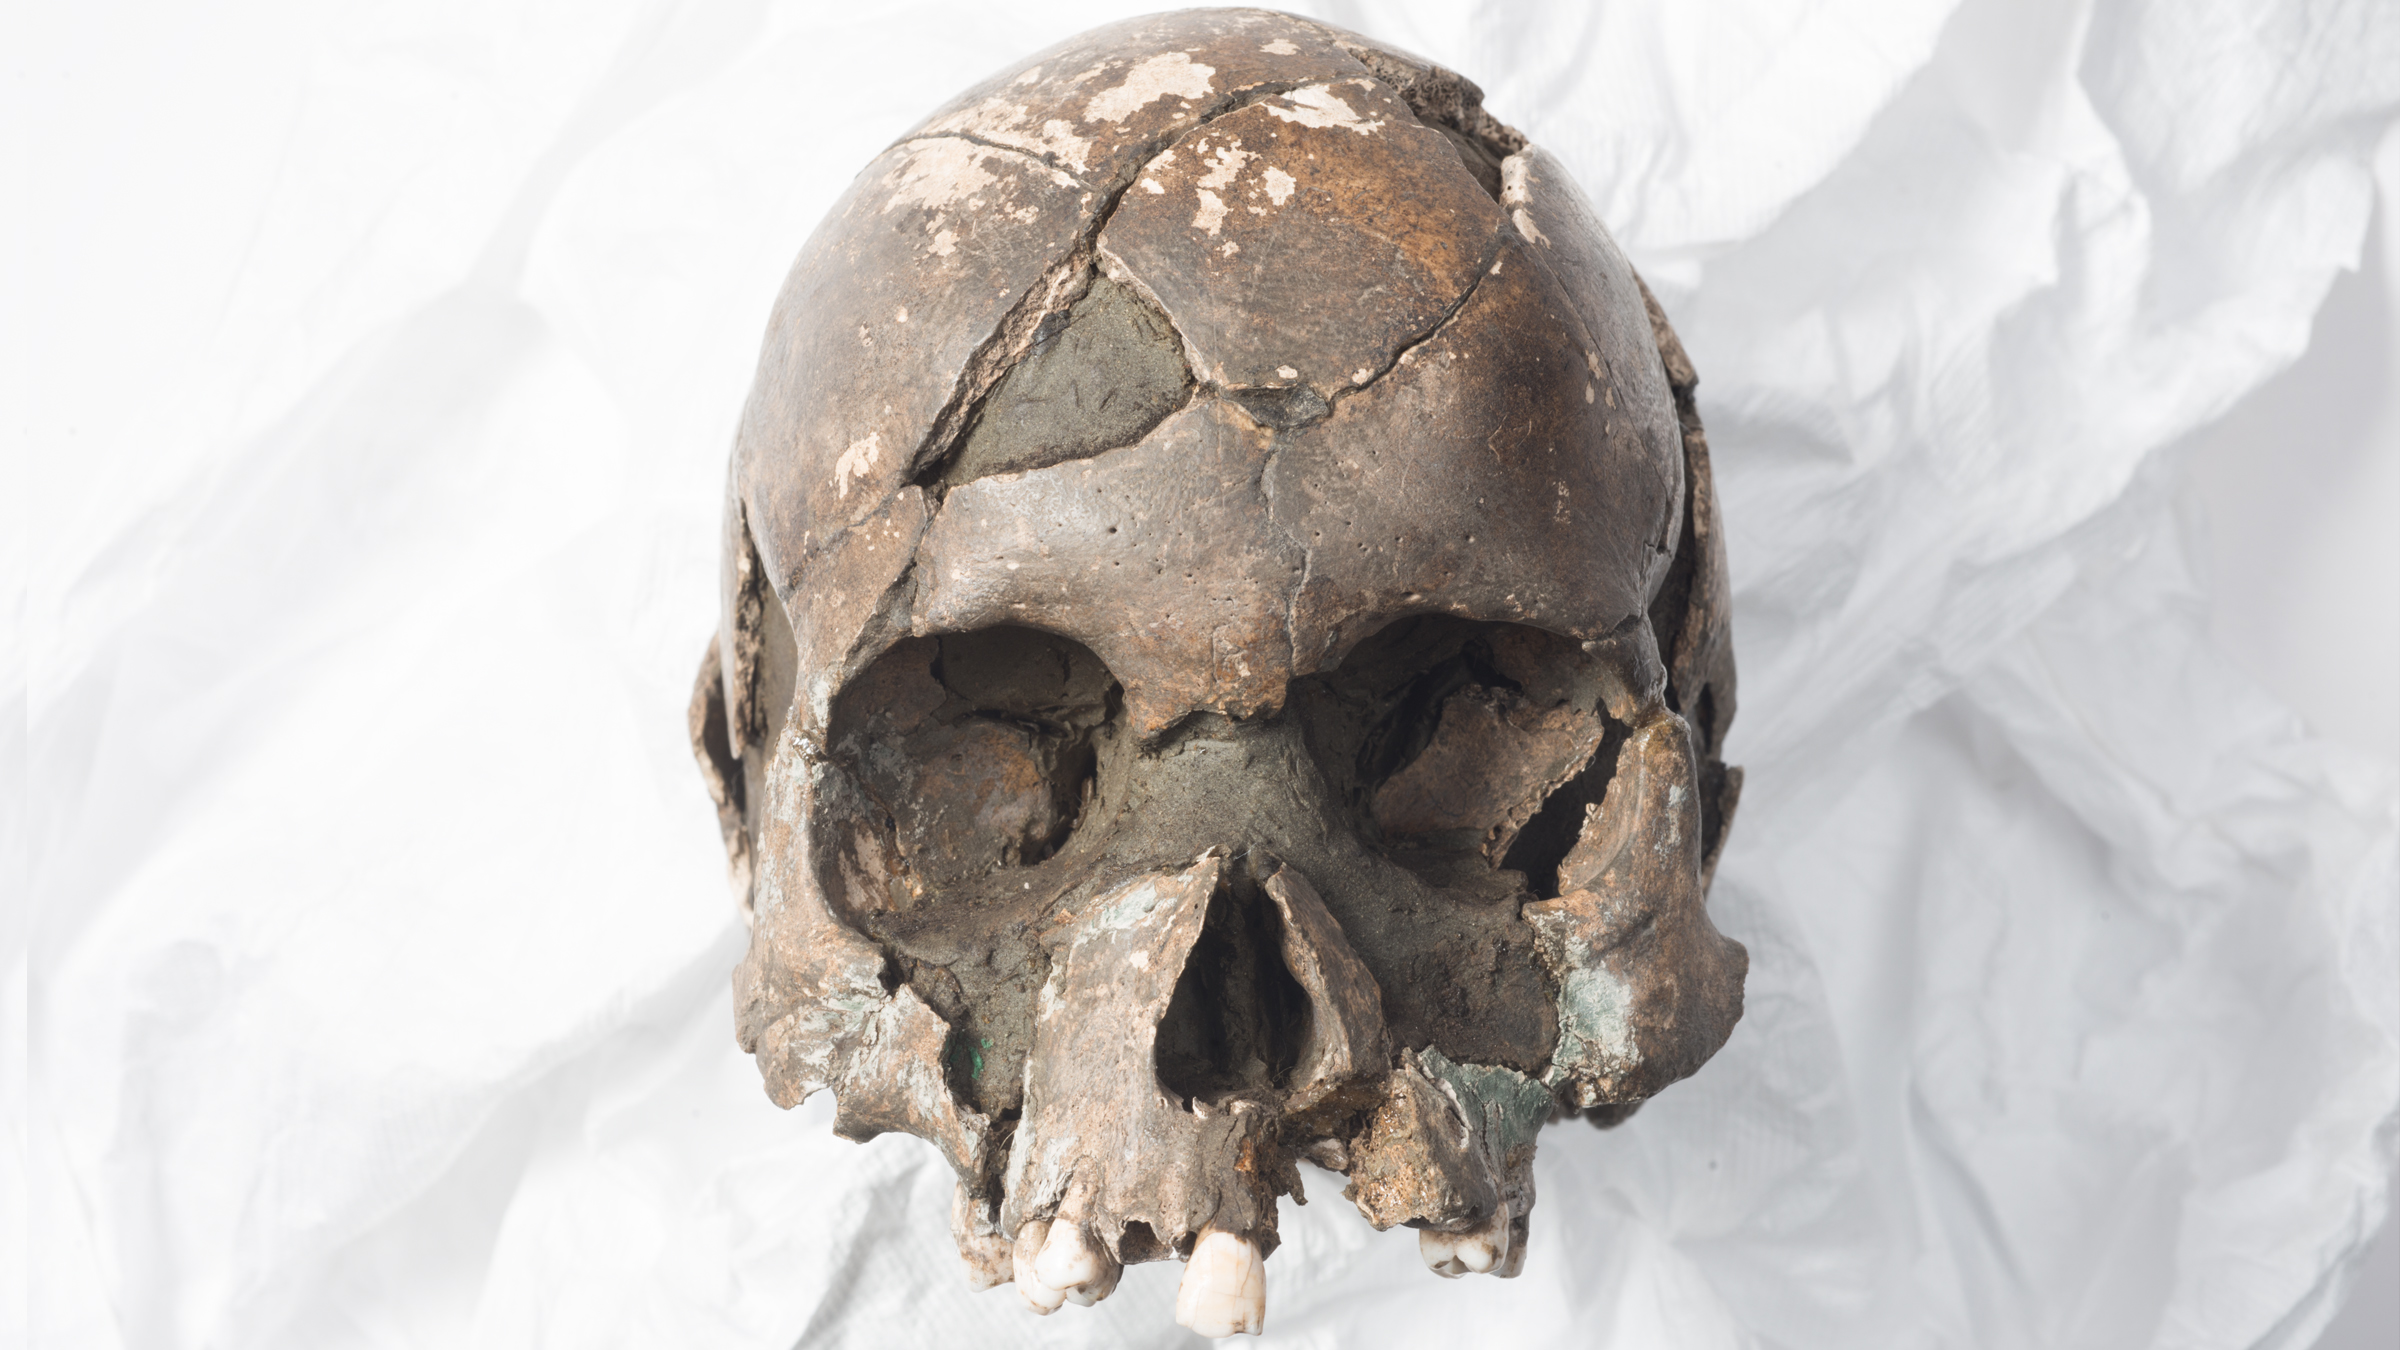 The preserved skull from Vistegutten, Norwegian for 